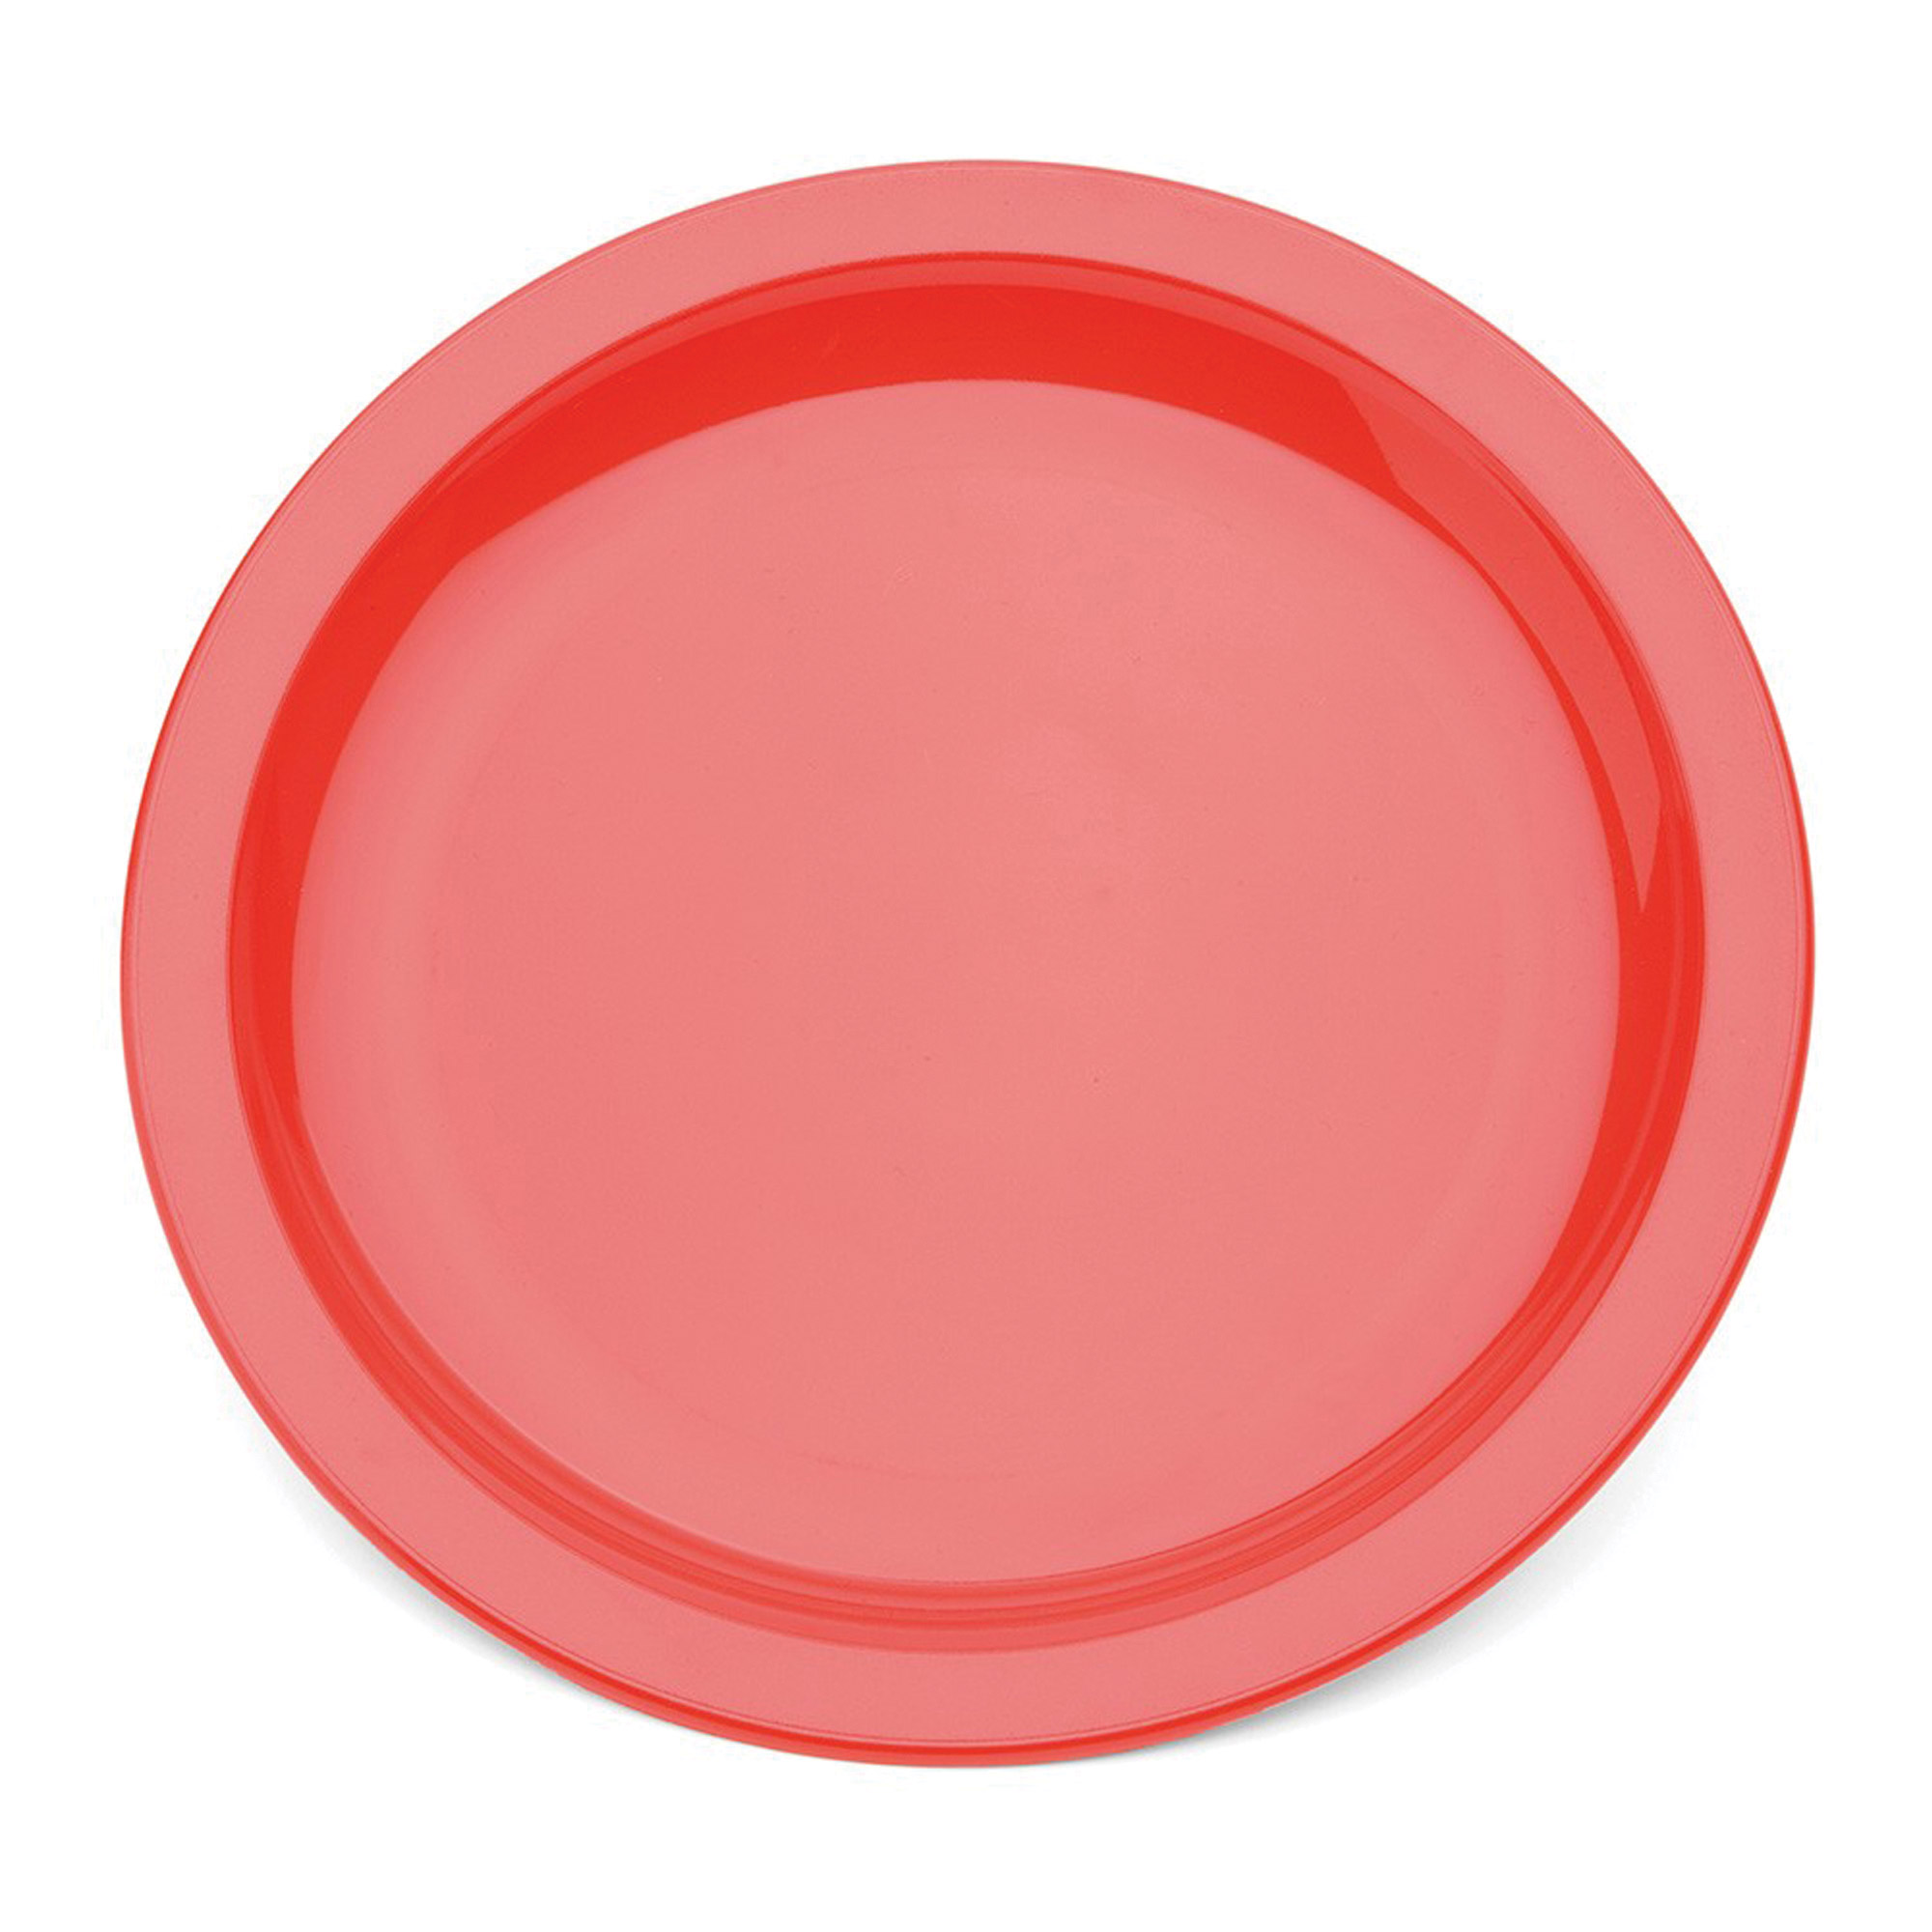 Polycarb Dinner Plate Narrow Rim Red 23cm